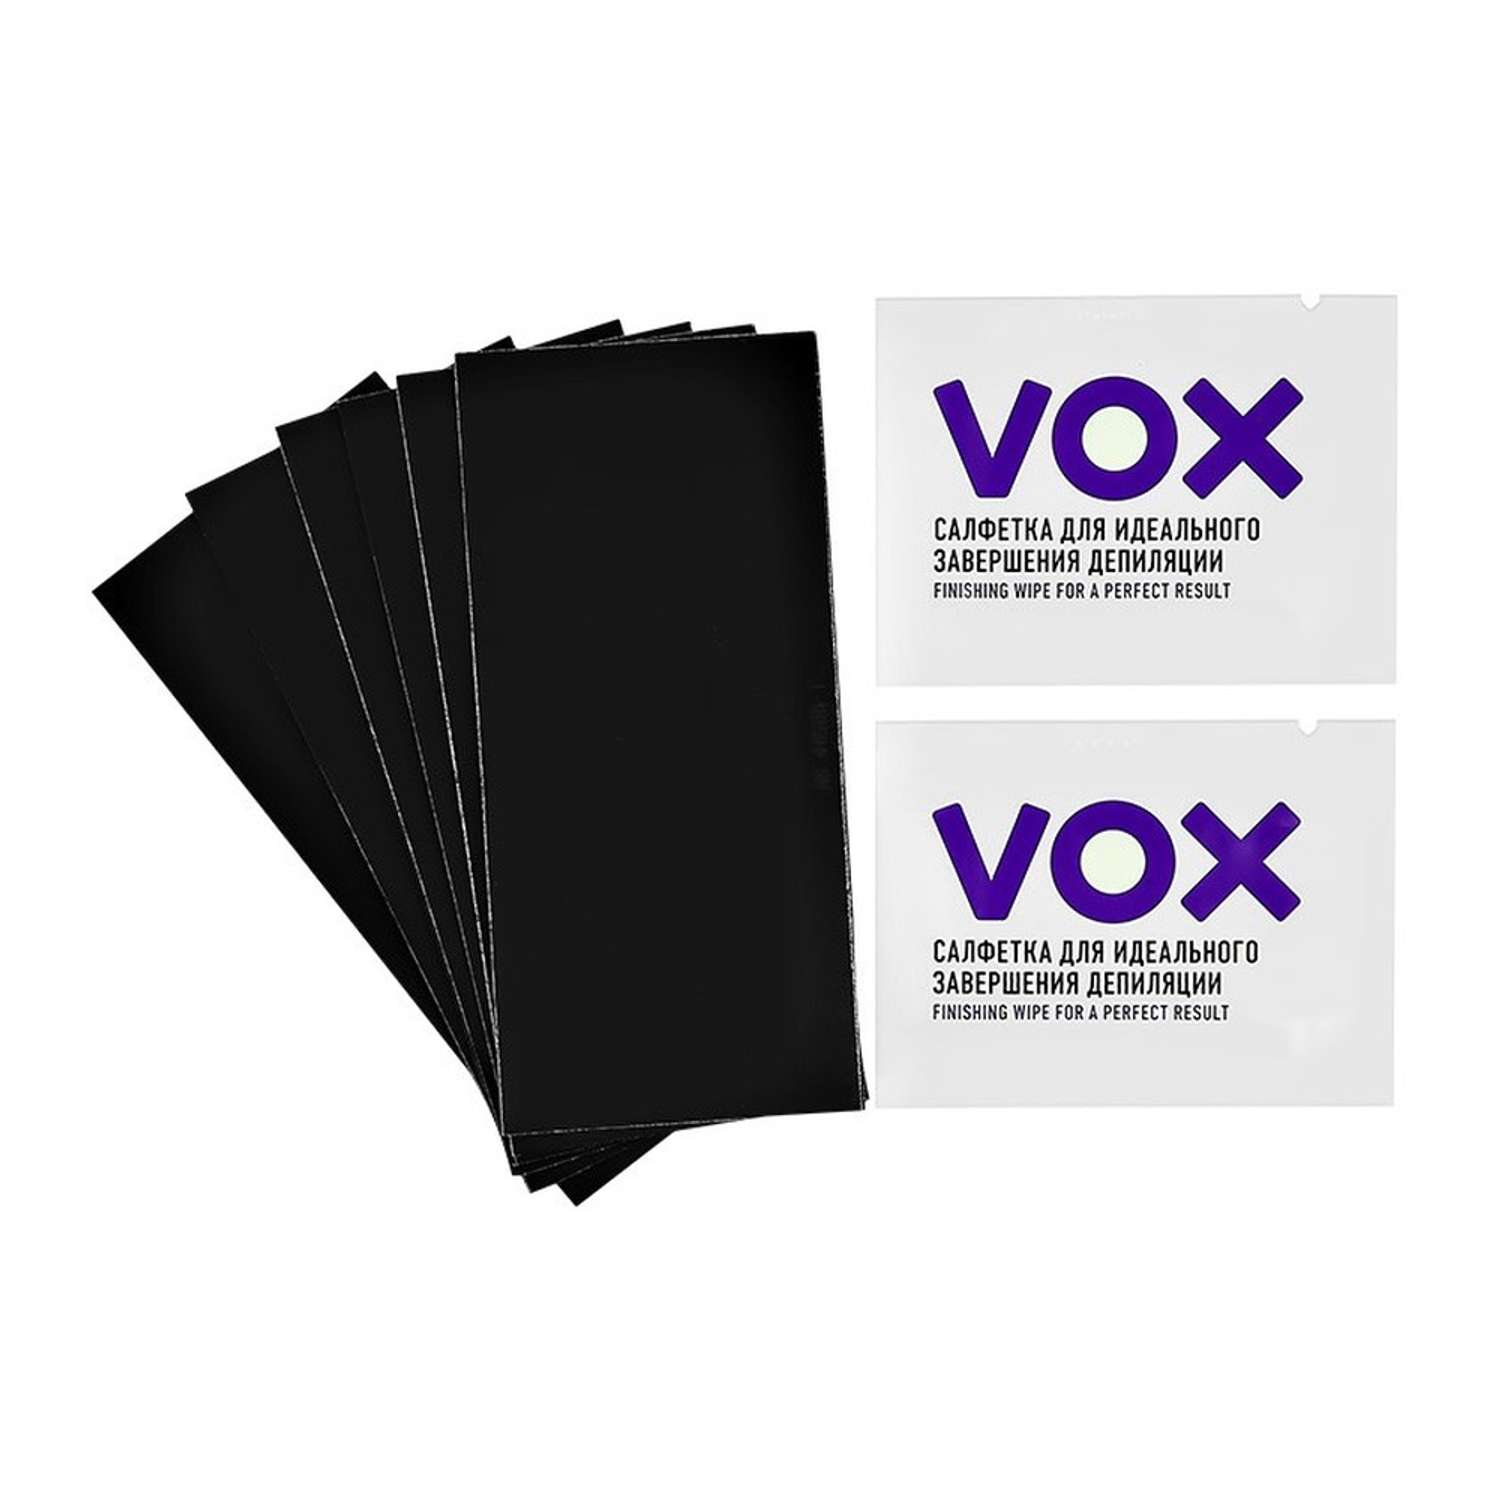 Vox для депиляции. Полоски восковые для тела `Vox` Neon collection 12 шт+ 2 салфетки. Восковые полоски для лица Vox. Vox полоски для депиляции. Vox воск для депиляции.